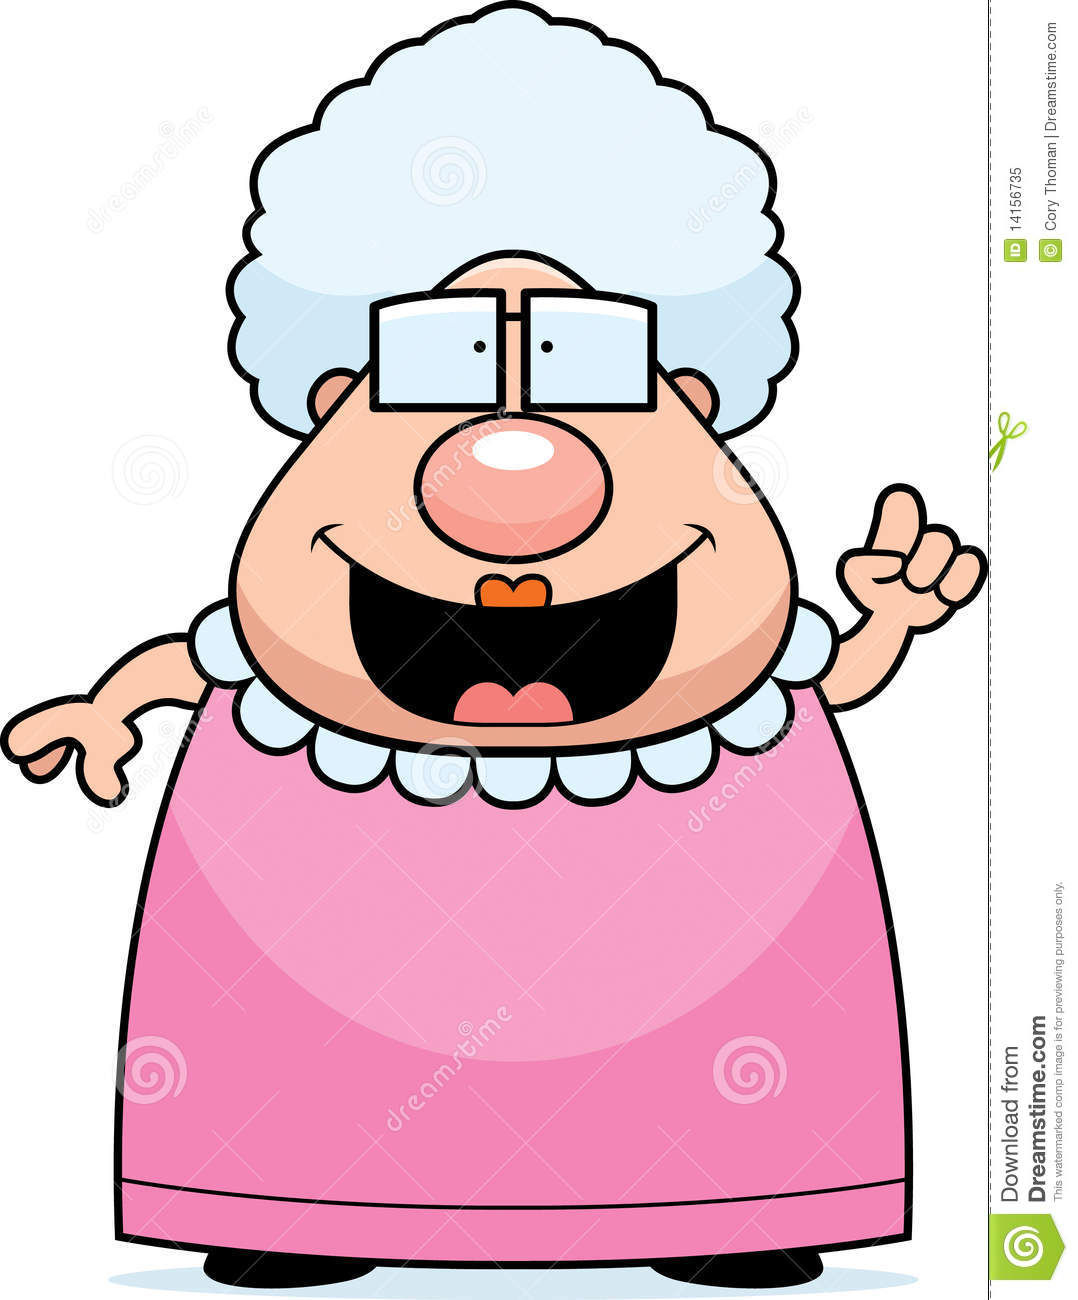 Funny Grandma Clipart   Cliparthut   Free Clipart